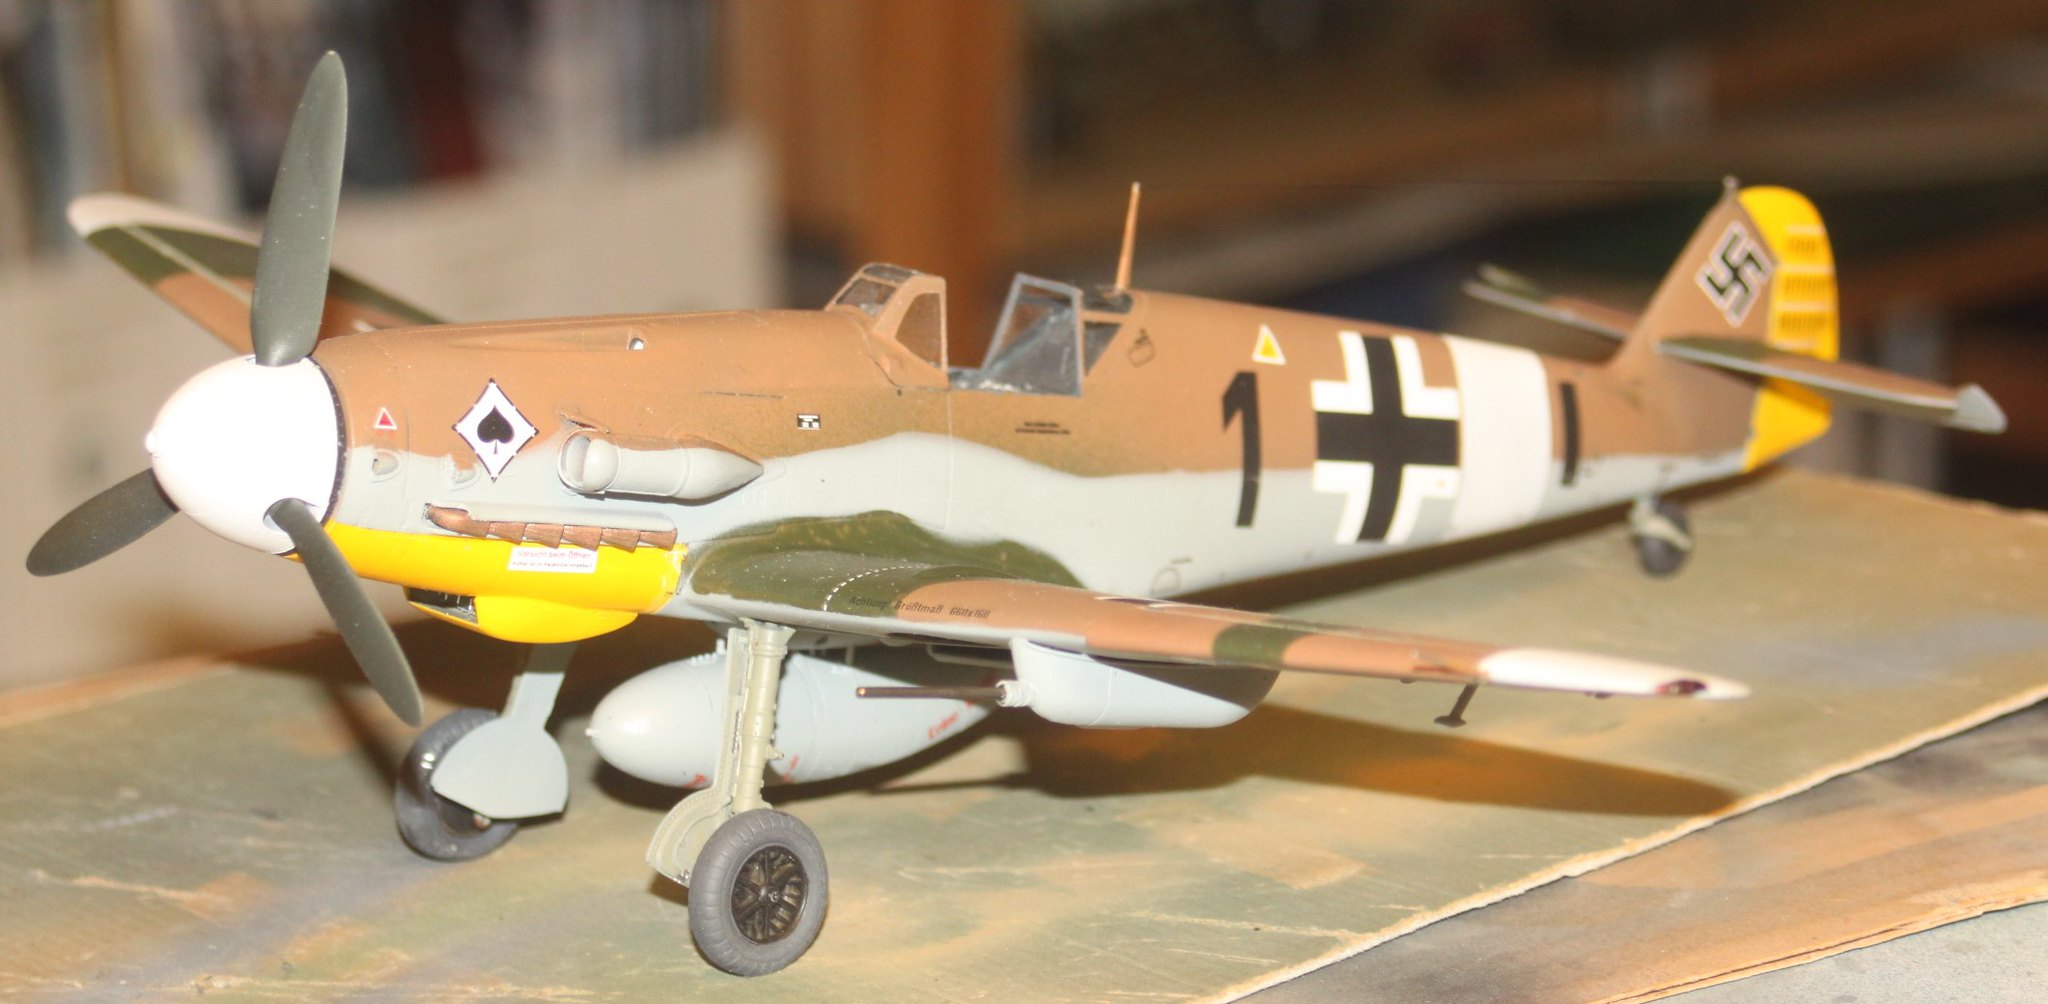 Messerschmitt Bf109G-2, Messerschmitt Bf109G-2, Oblt. Franz Scheiss, 8. JG53 "Pik Ass", Revell 1/32 52507811024_be4189f399_k